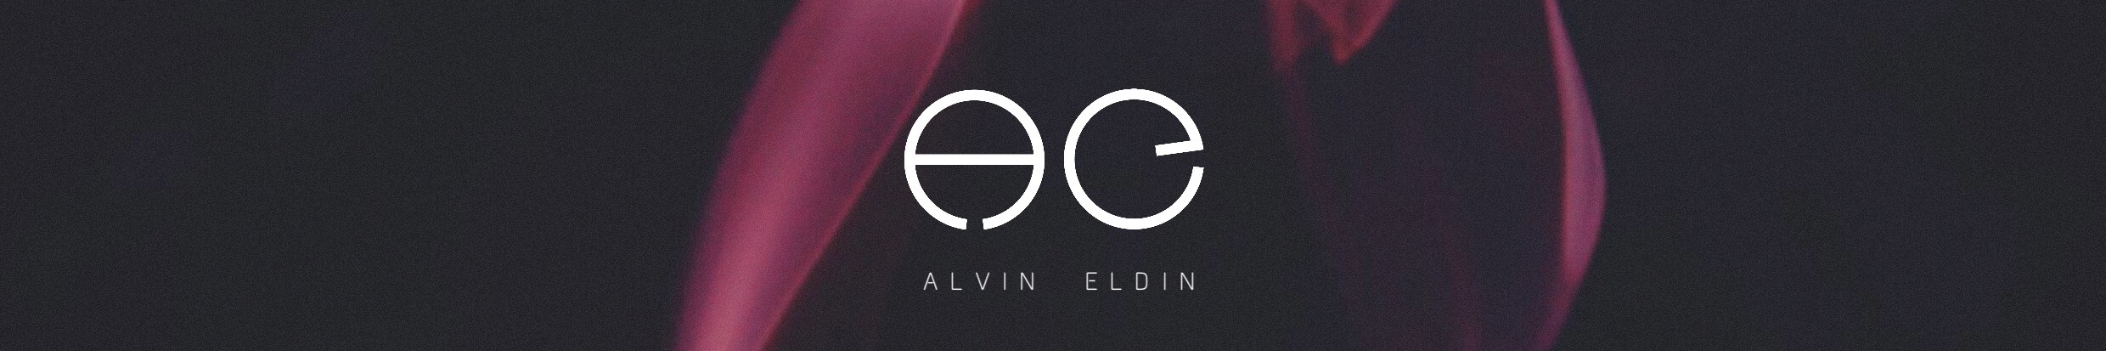 Alvin Eldin